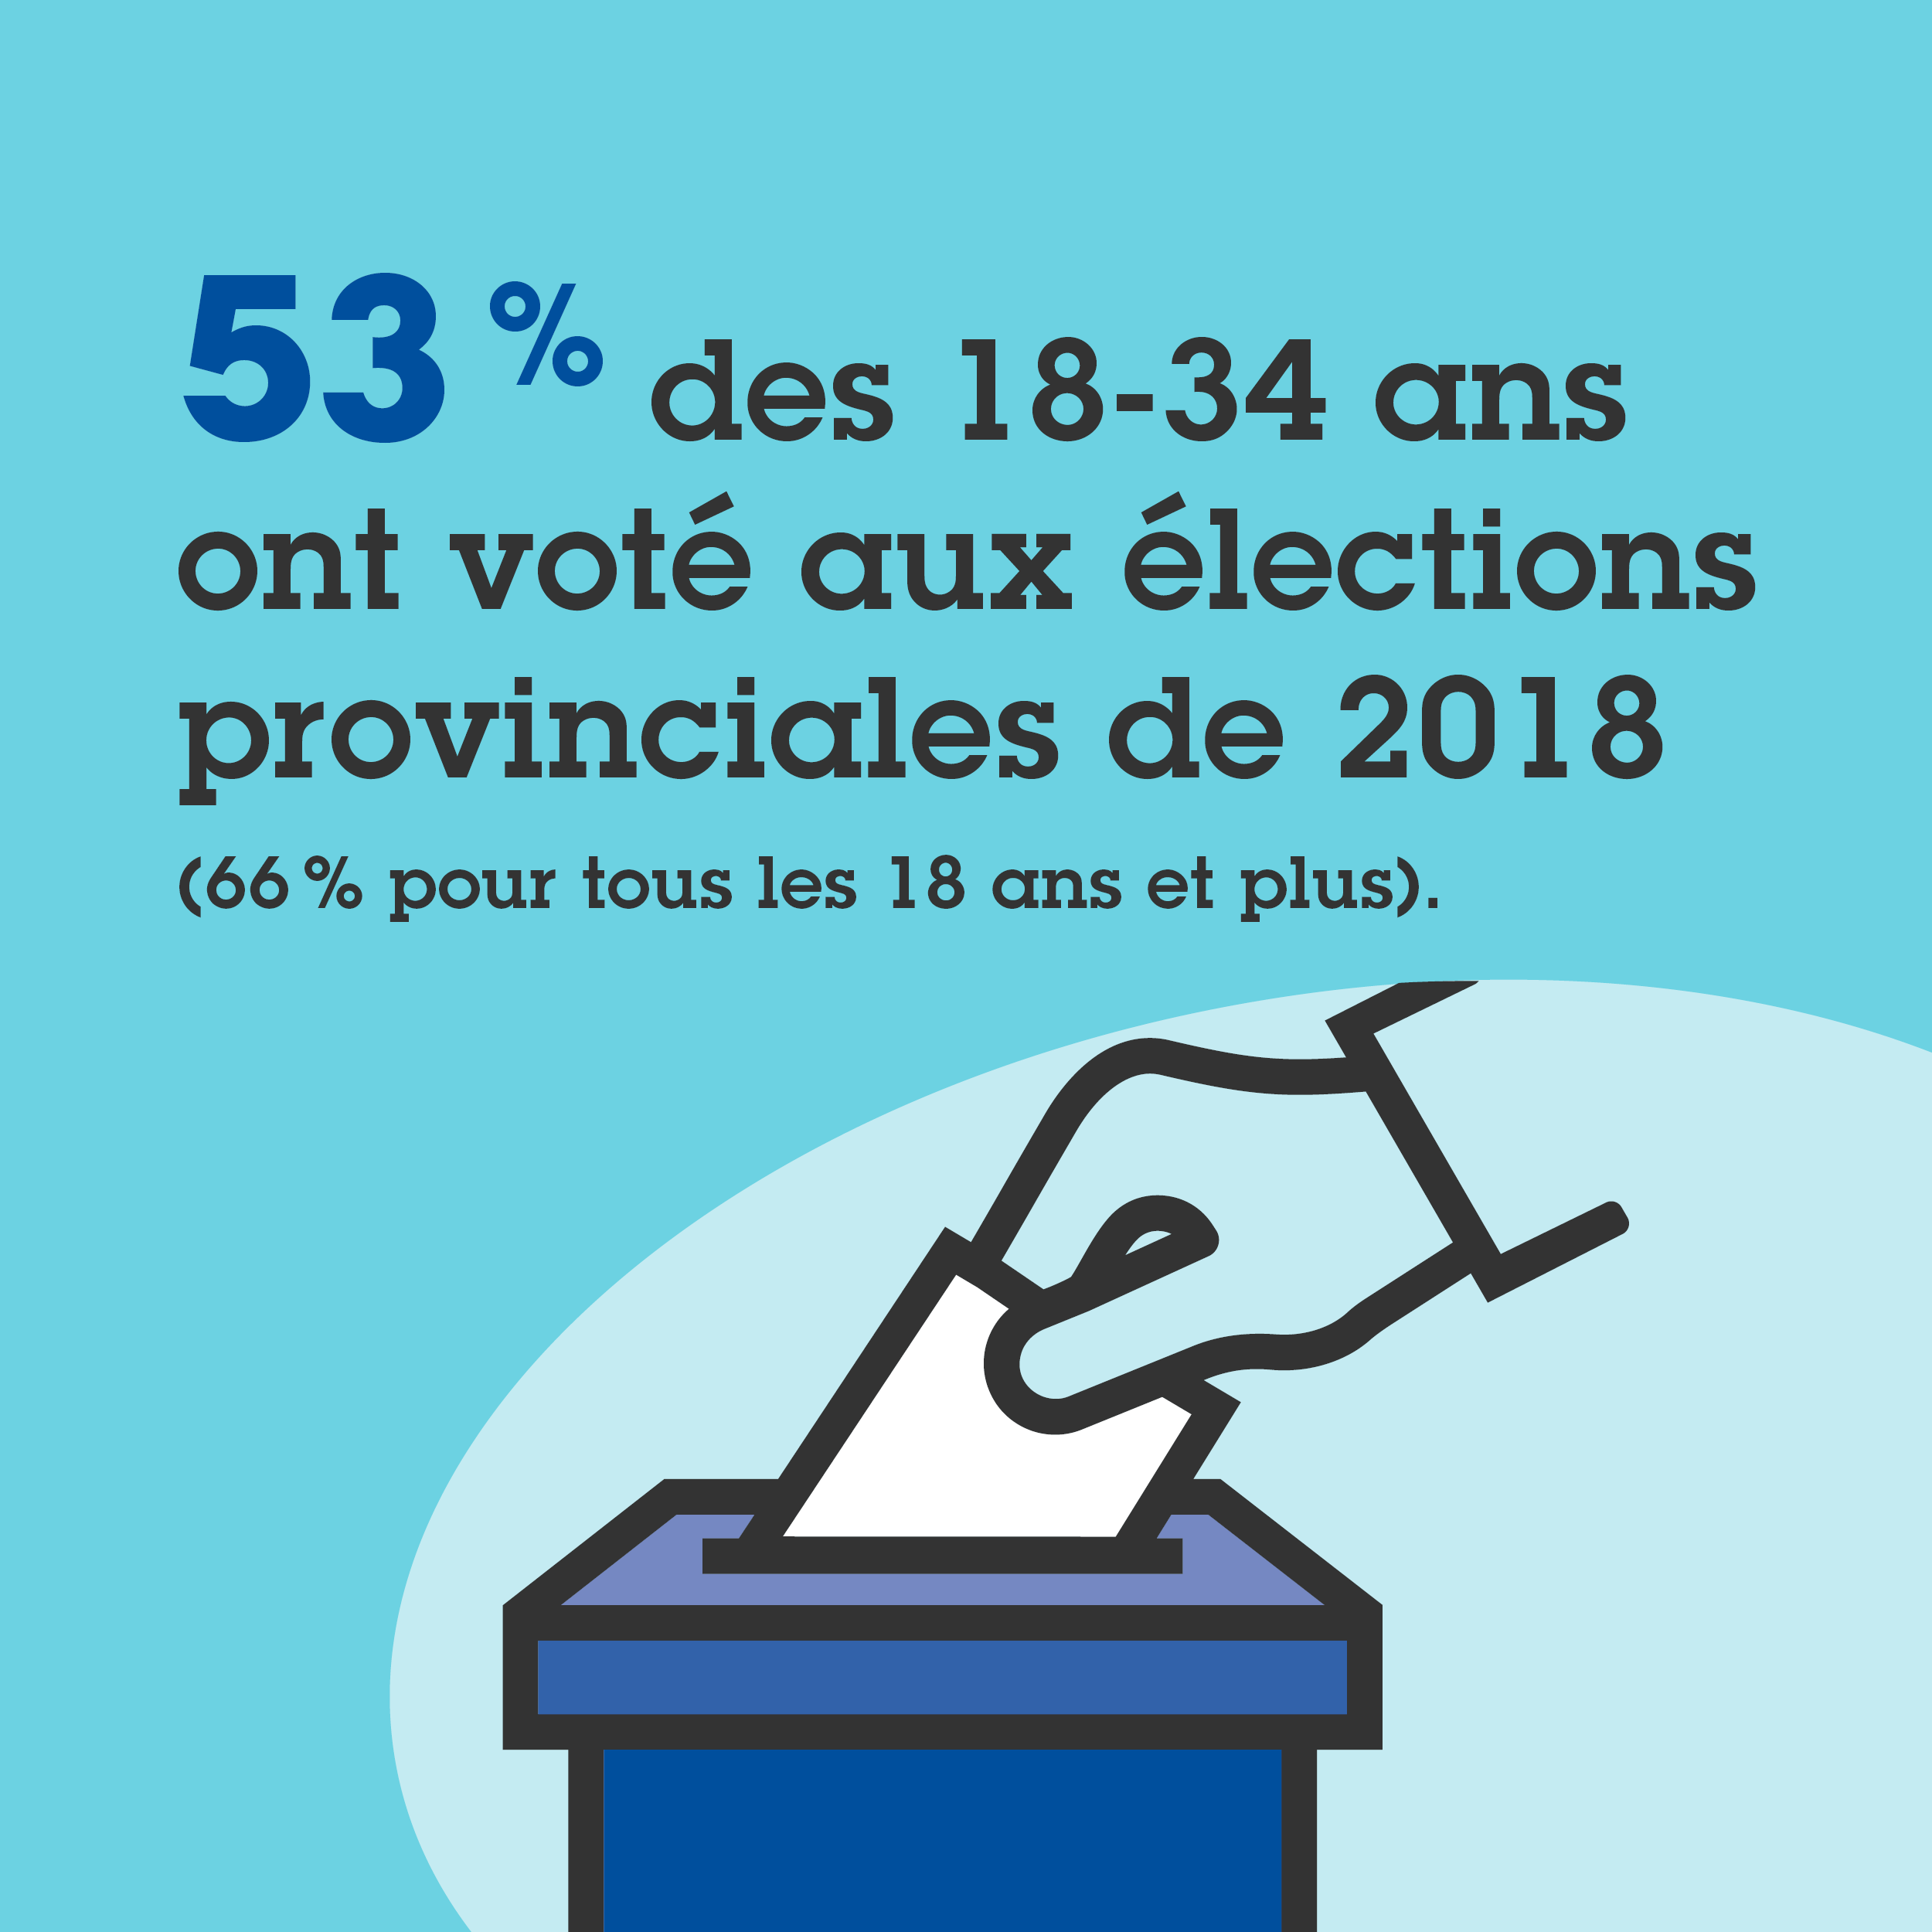 53 % des 18-34 ans ont voté aux élections provinciales de 2018.